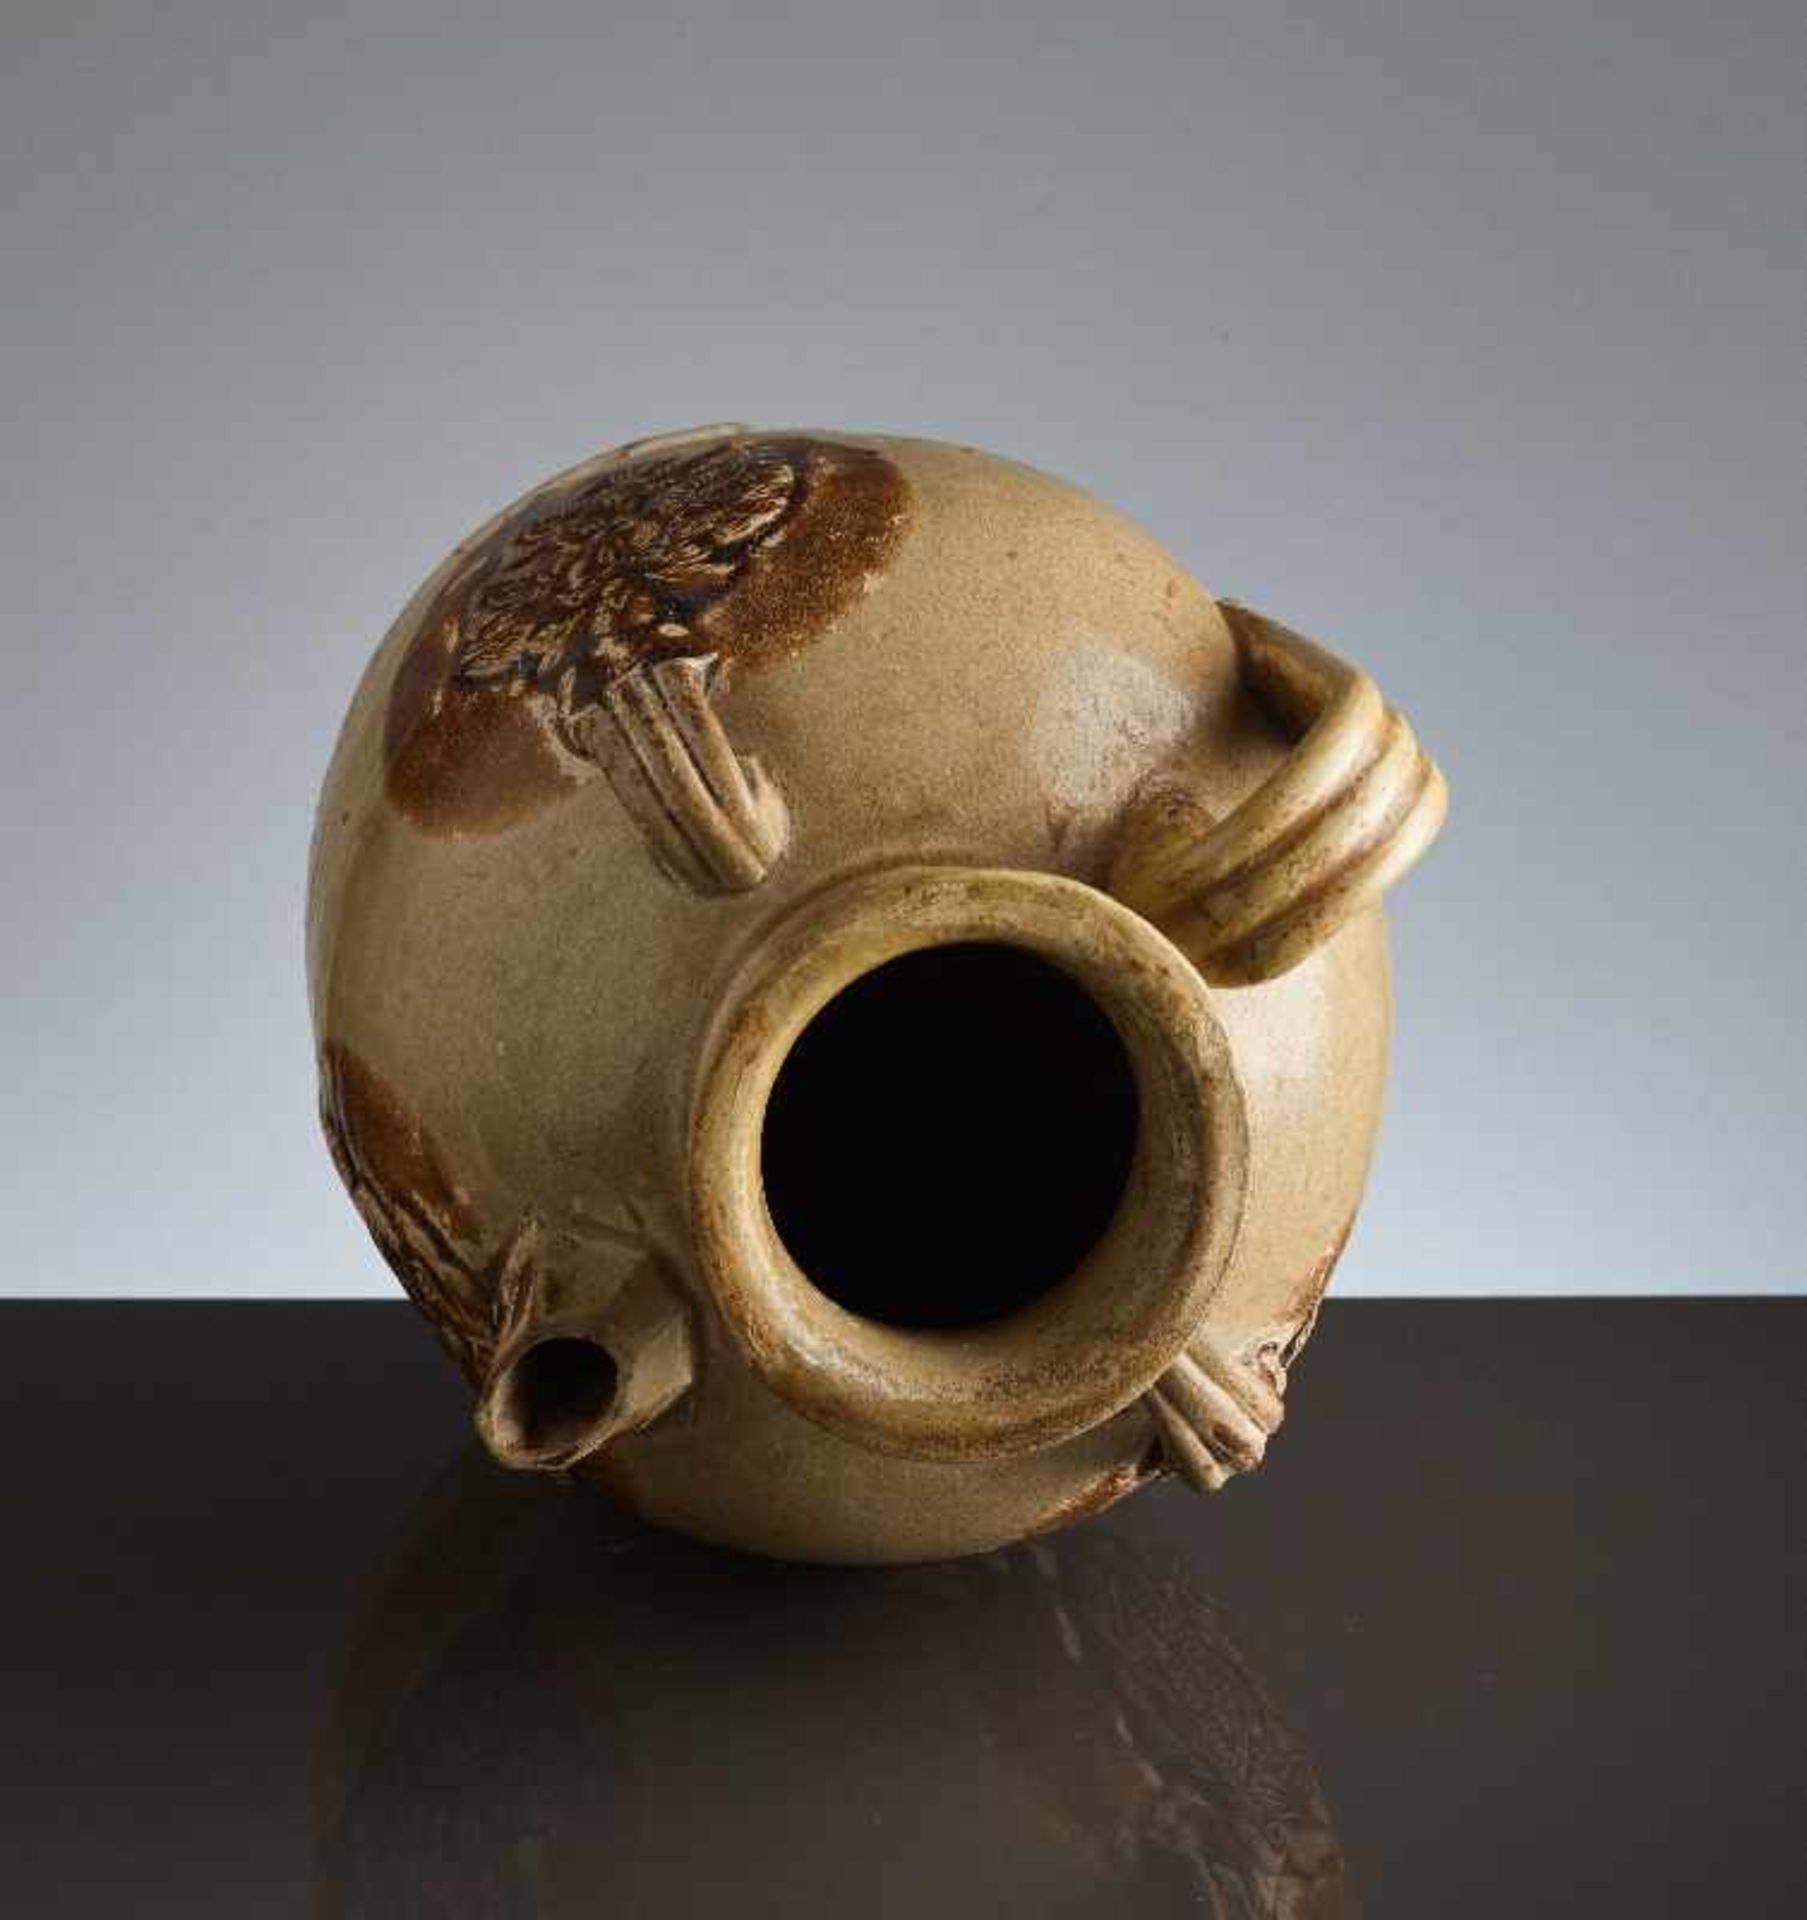 HENKELKANNE MIT RELIEFDEKORGlasierte Keramik. China, Tang, ca. 8. bis 9. Jh. Typische Changsha- - Image 7 of 8